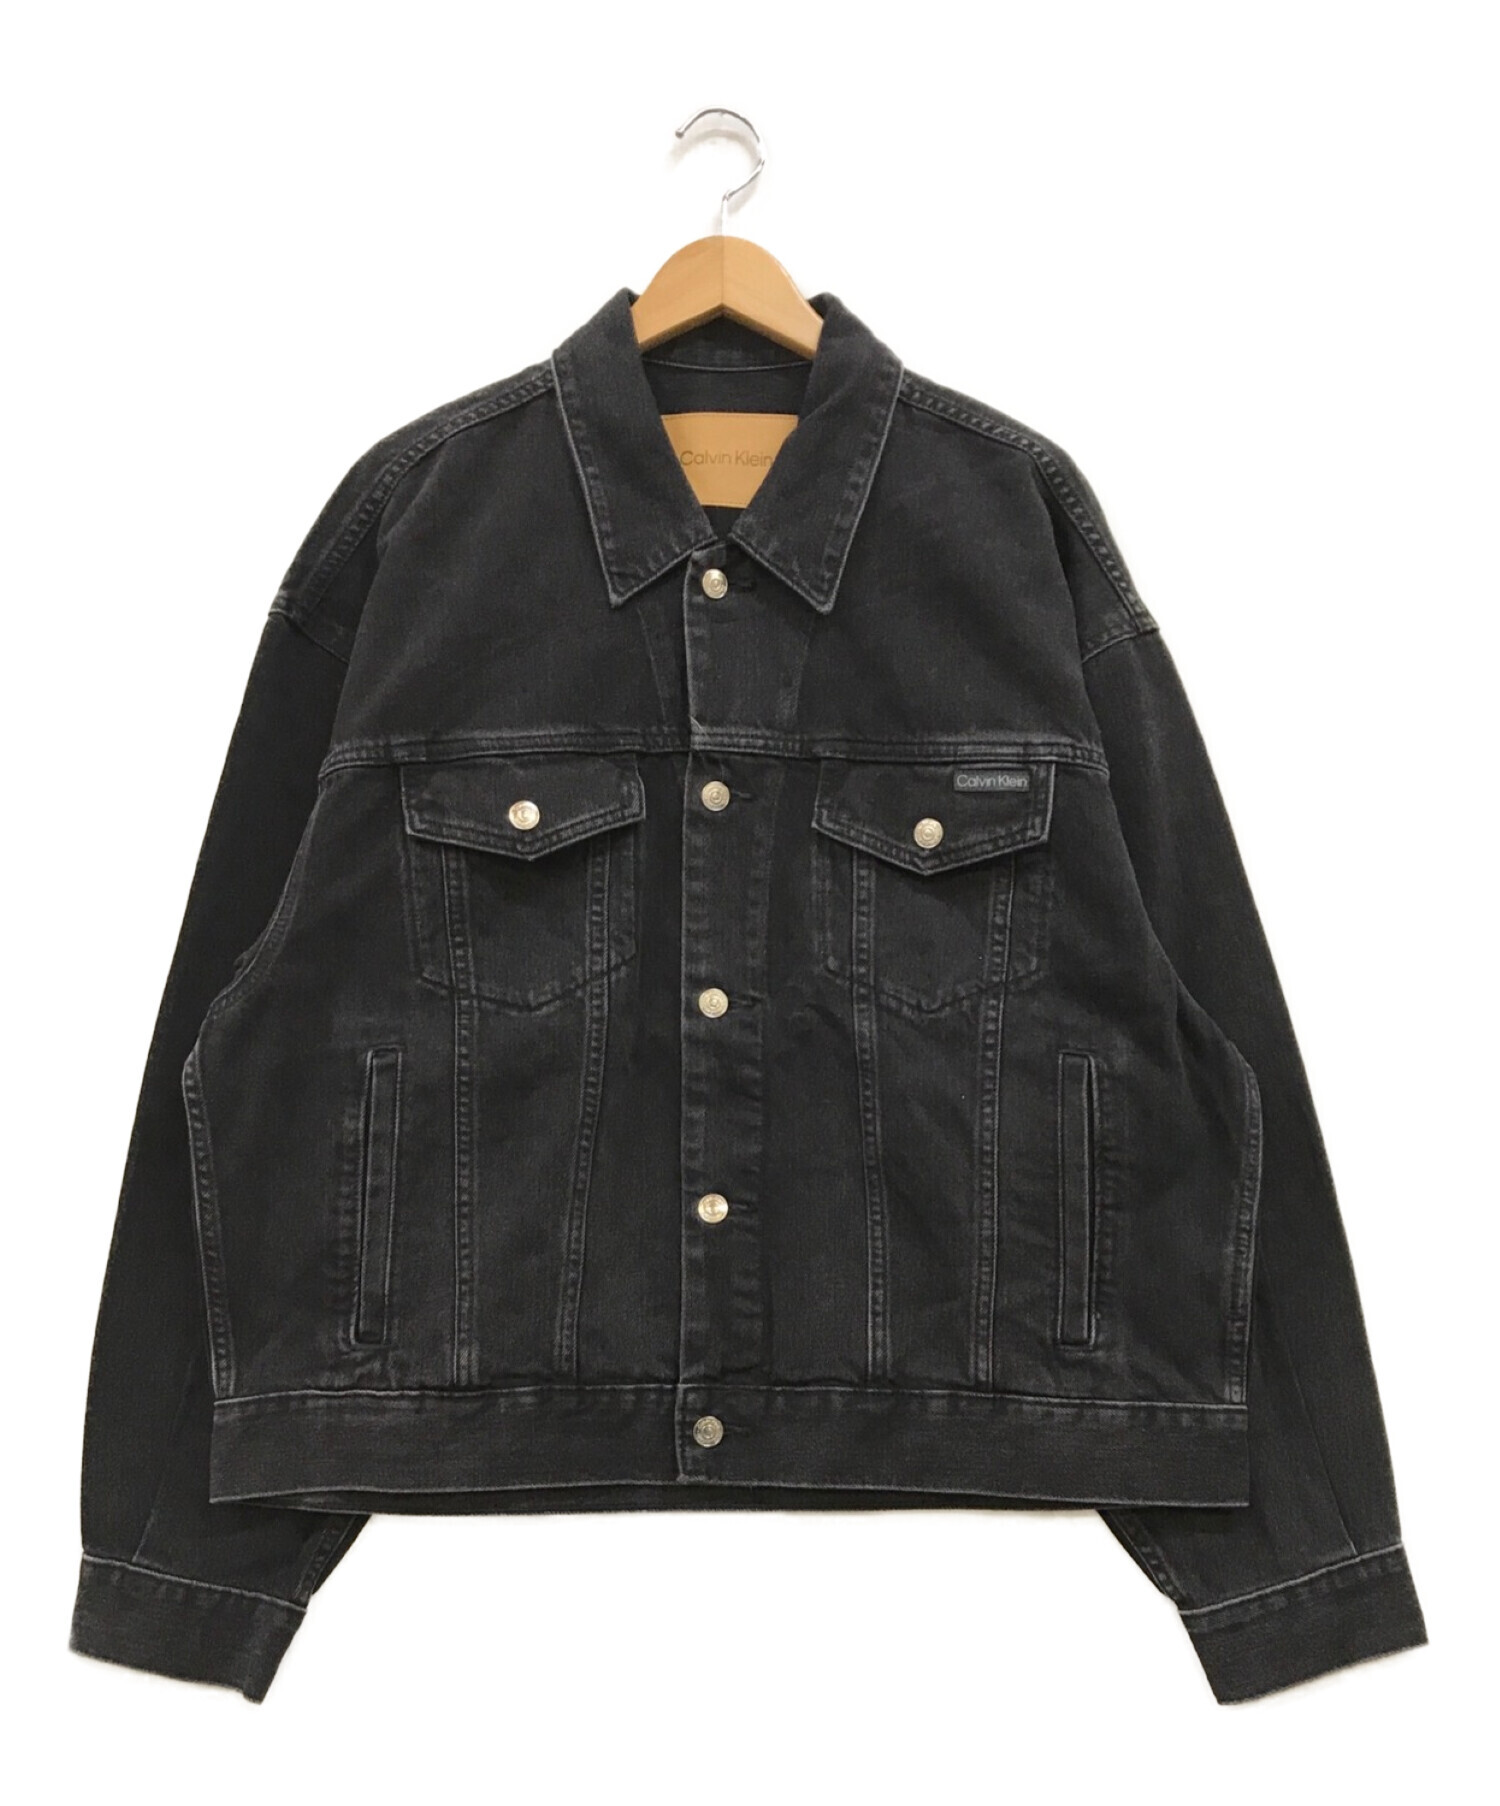 Calvin Klein (カルバンクライン) Trucker Jacket Black Wash ブラック サイズ:M 未使用品